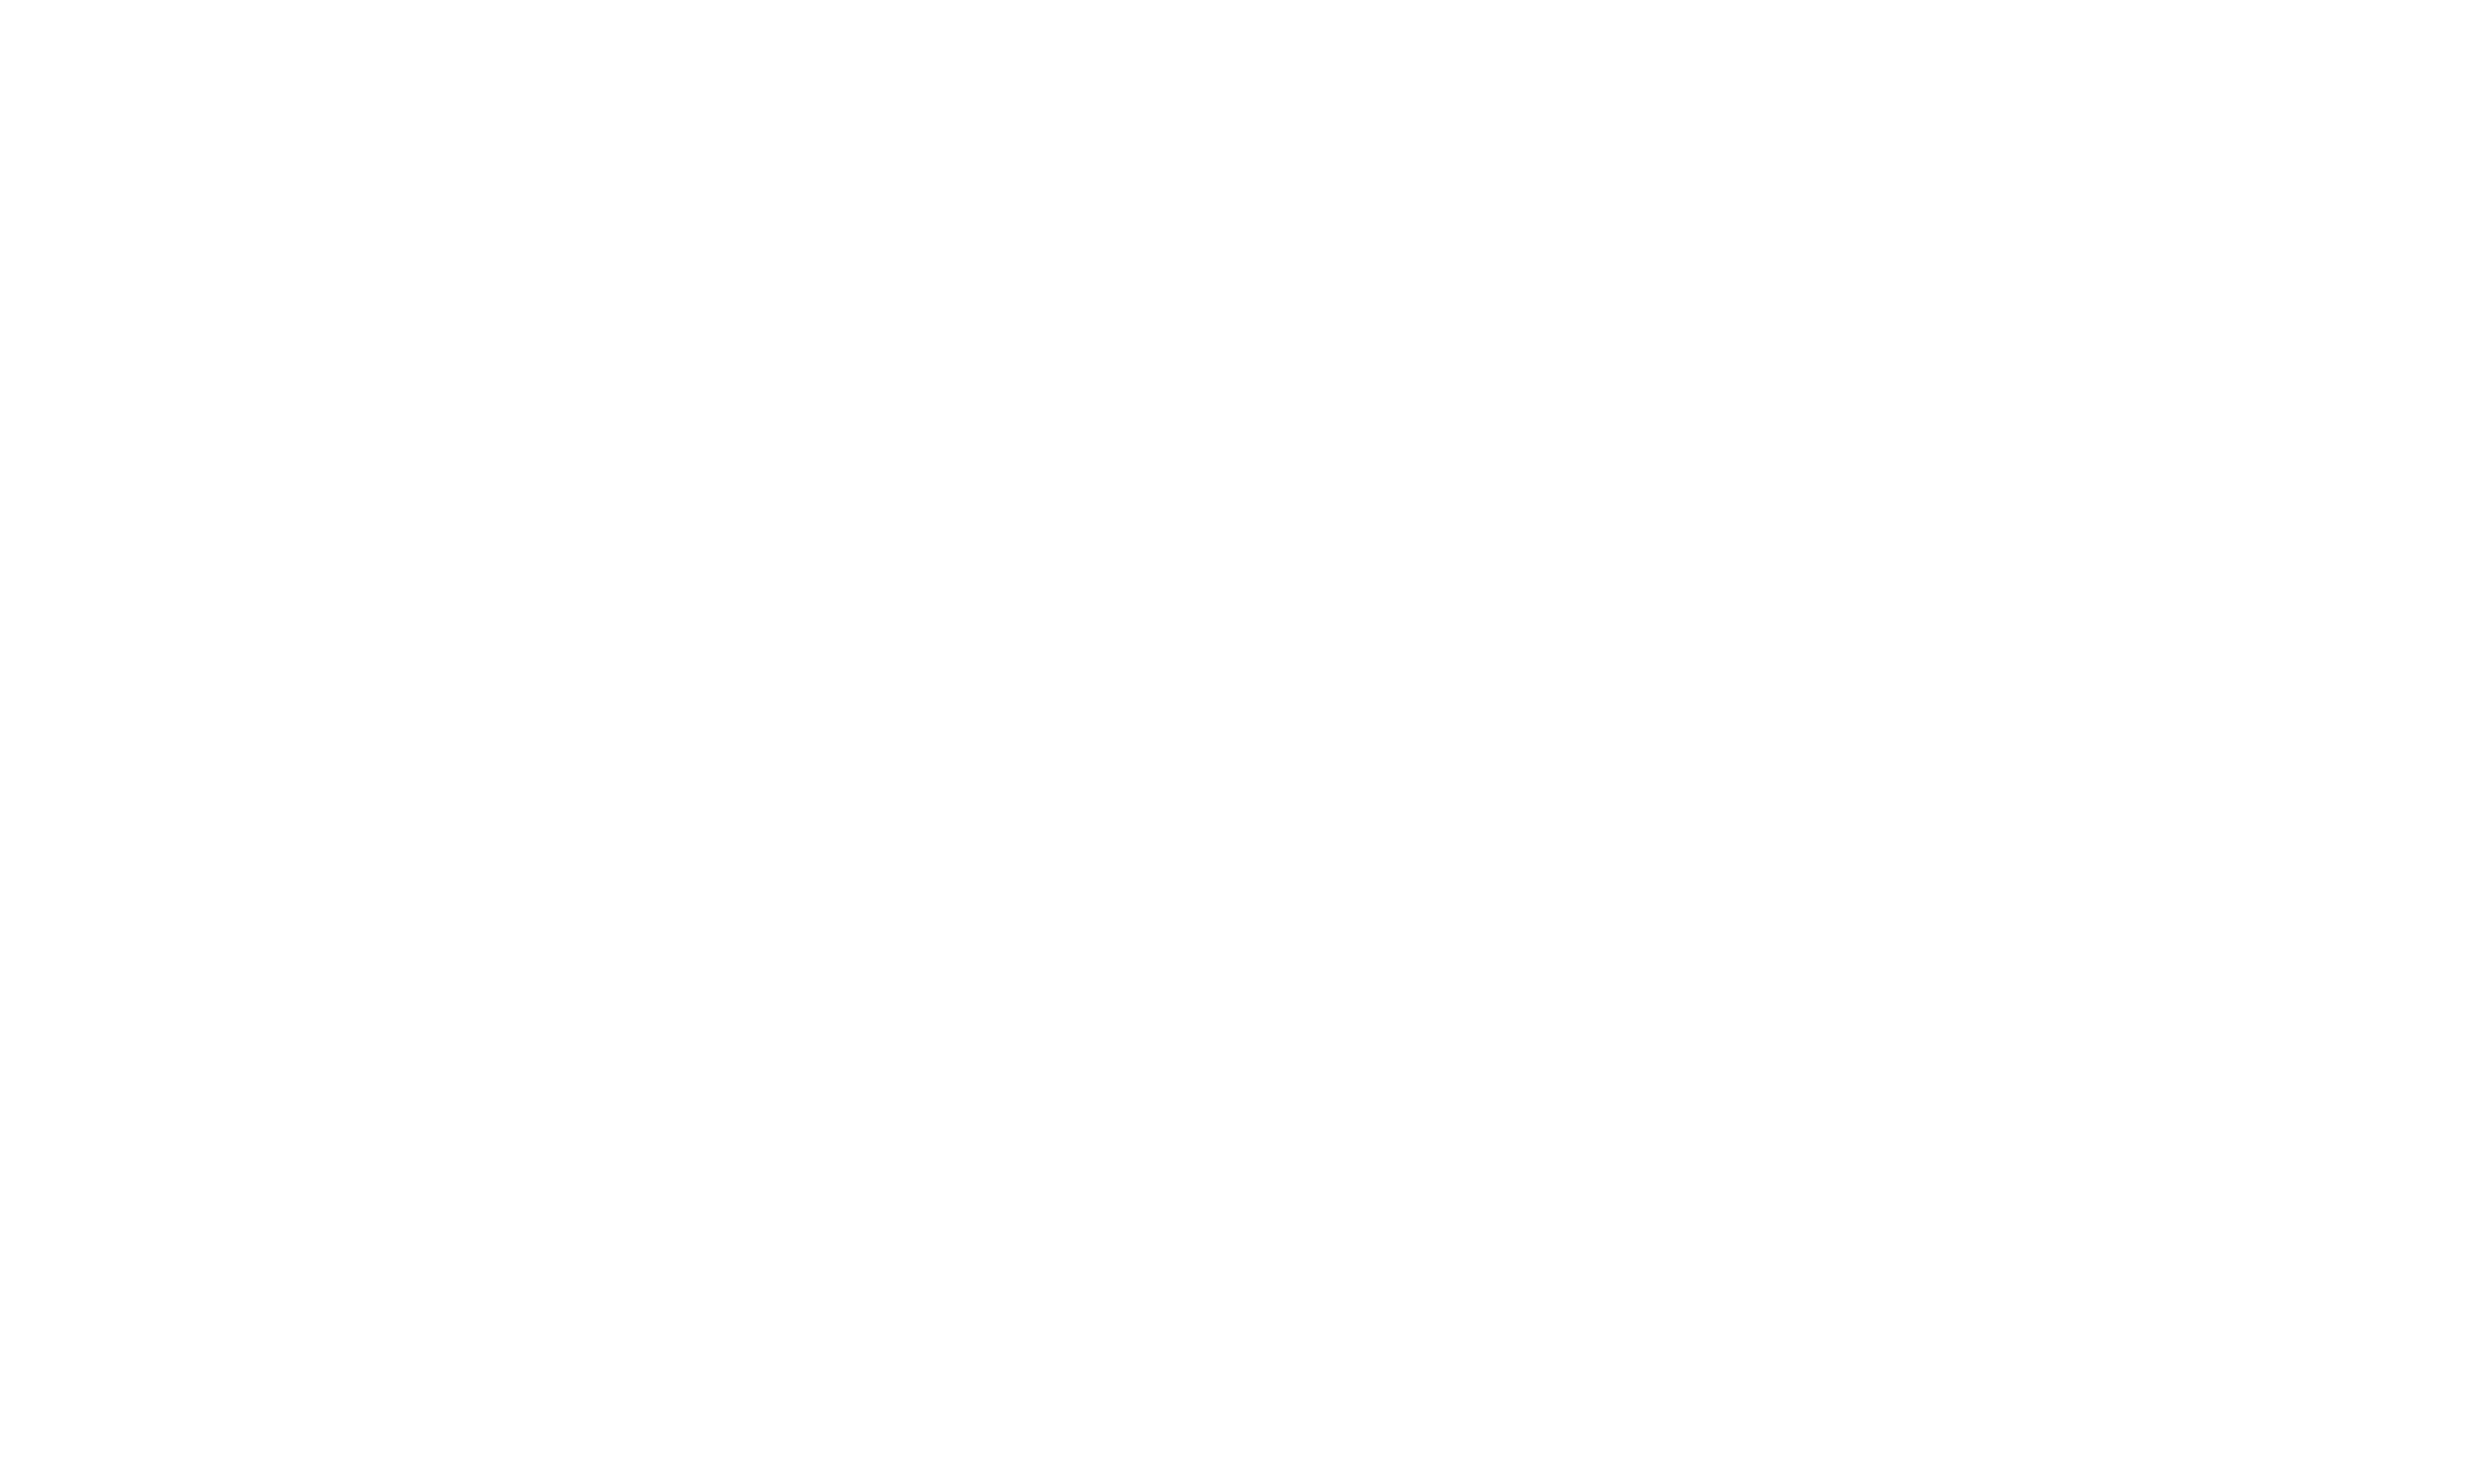 Tahoma Living